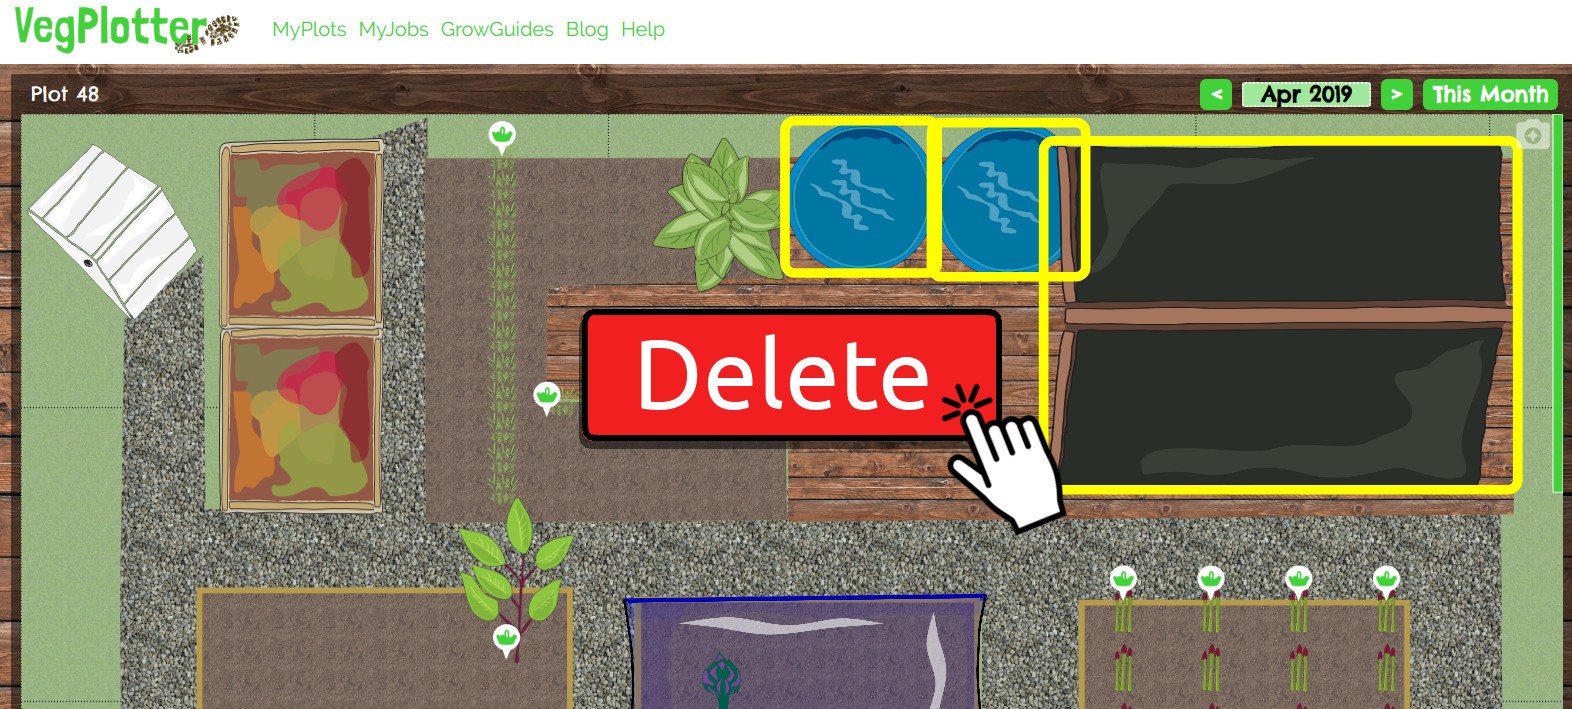 Short guide explaining how to delete items from VegPlotter's free vegetable garden planning software